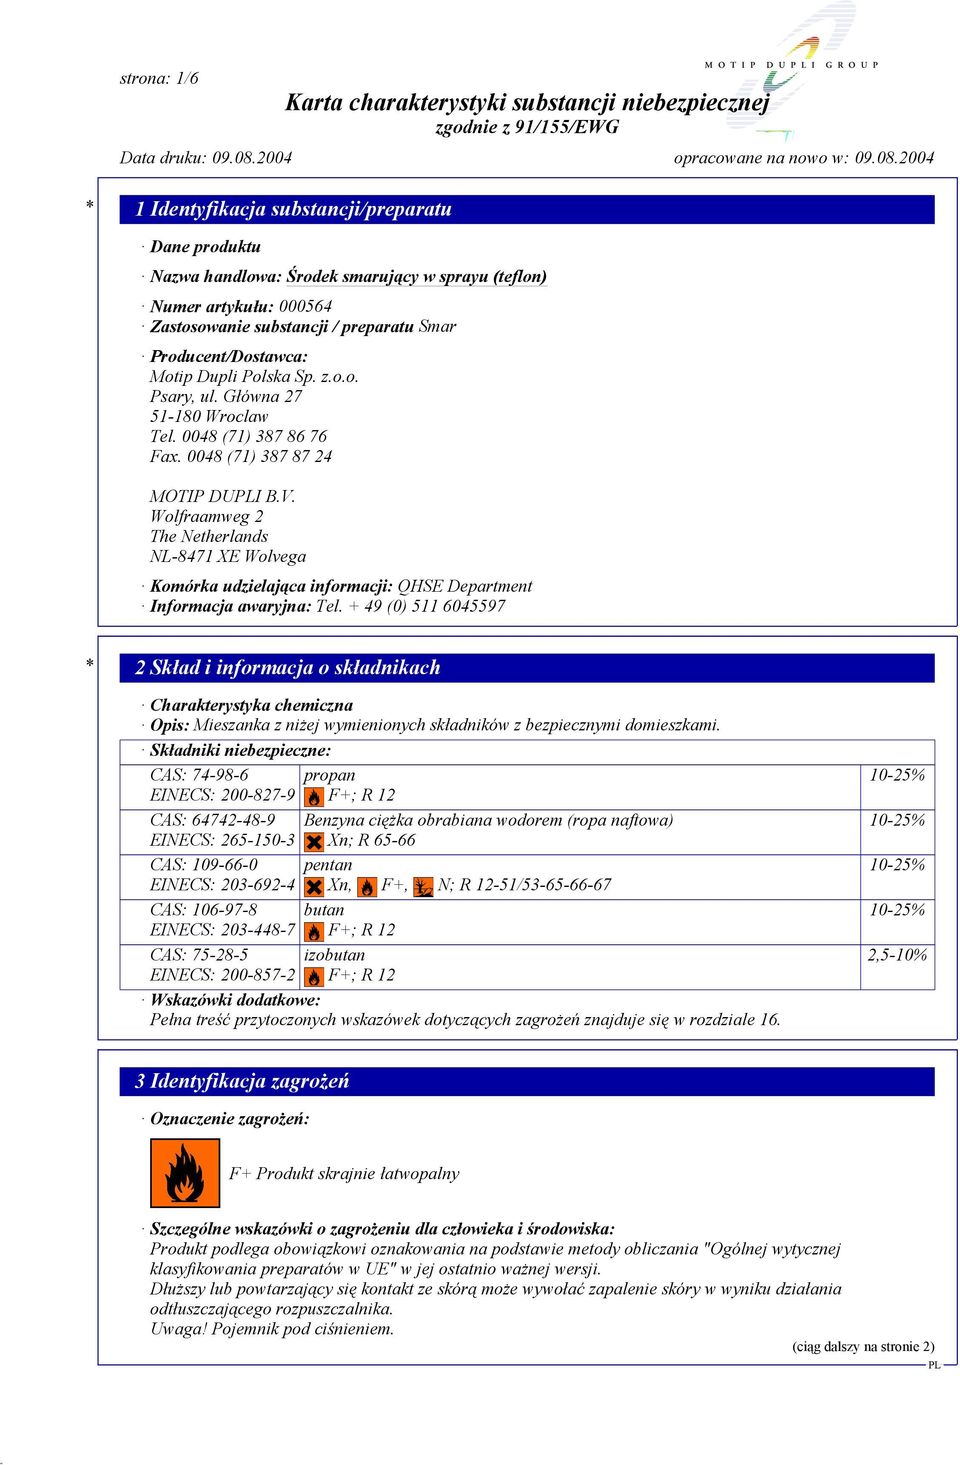 Wolfraamweg 2 The Netherlands NL-8471 XE Wolvega Komórka udzielająca informacji: QHSE Department Informacja awaryjna: Tel.